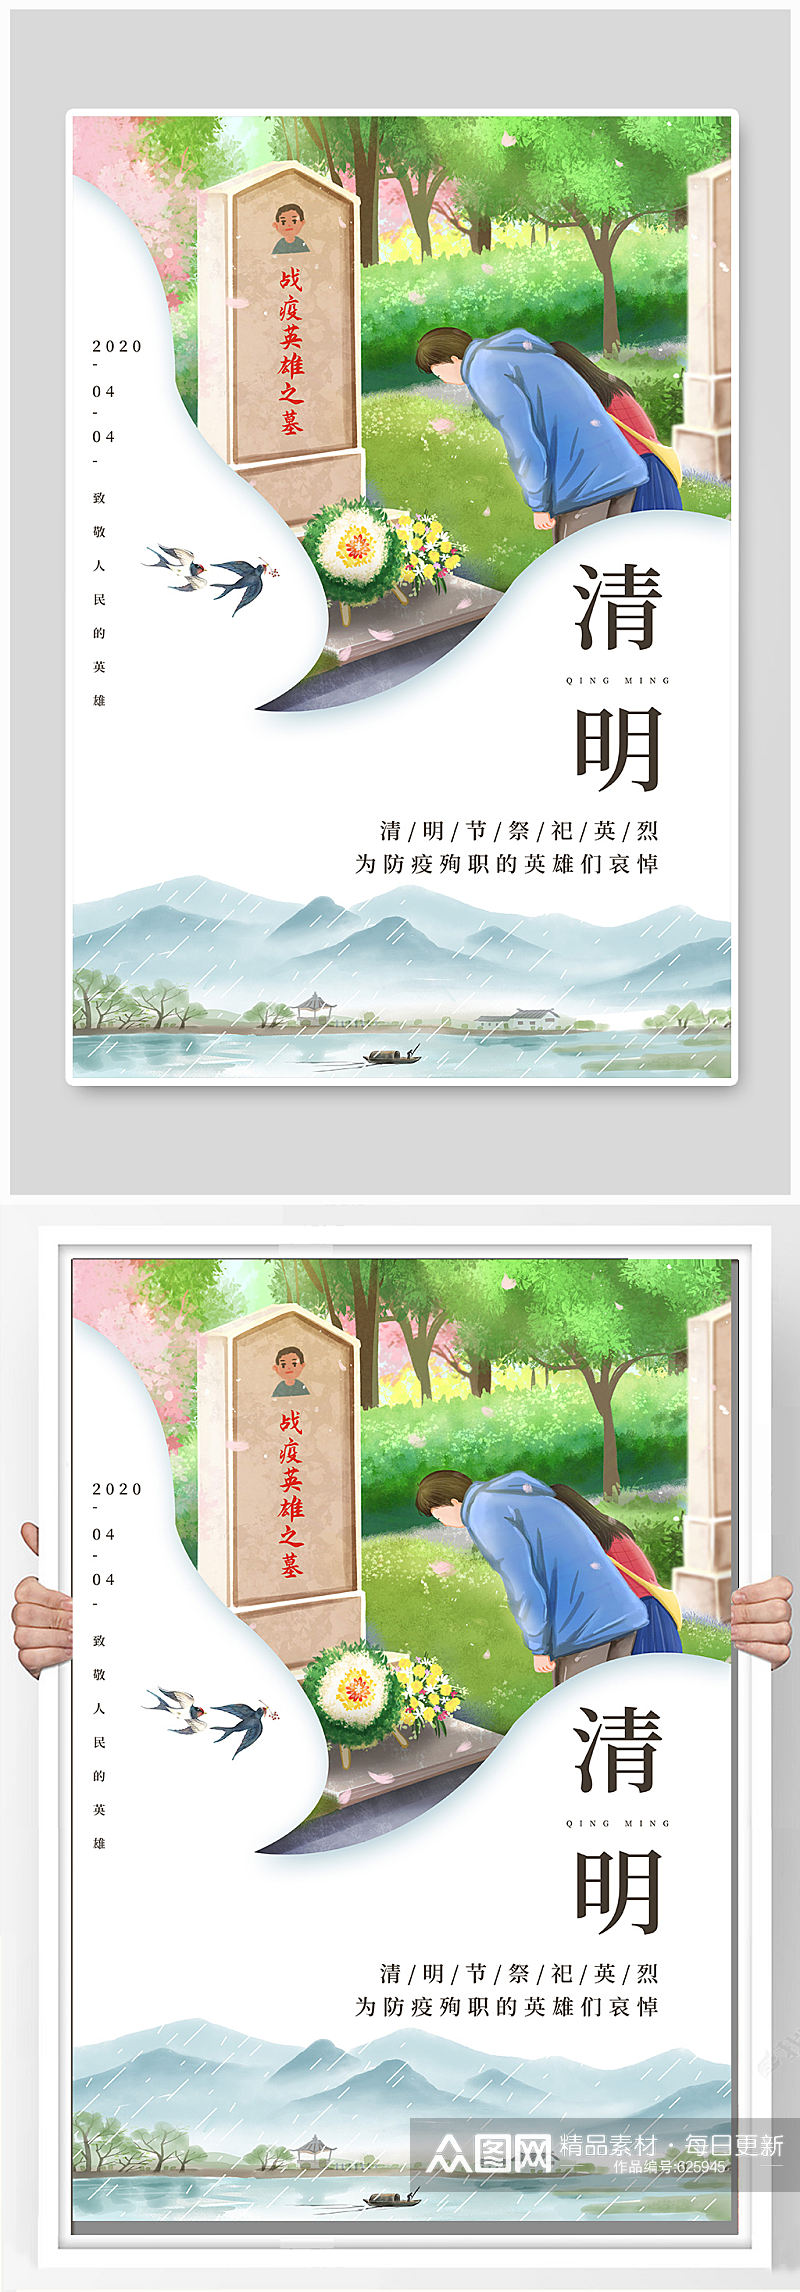 中国传统节日清明海报素材